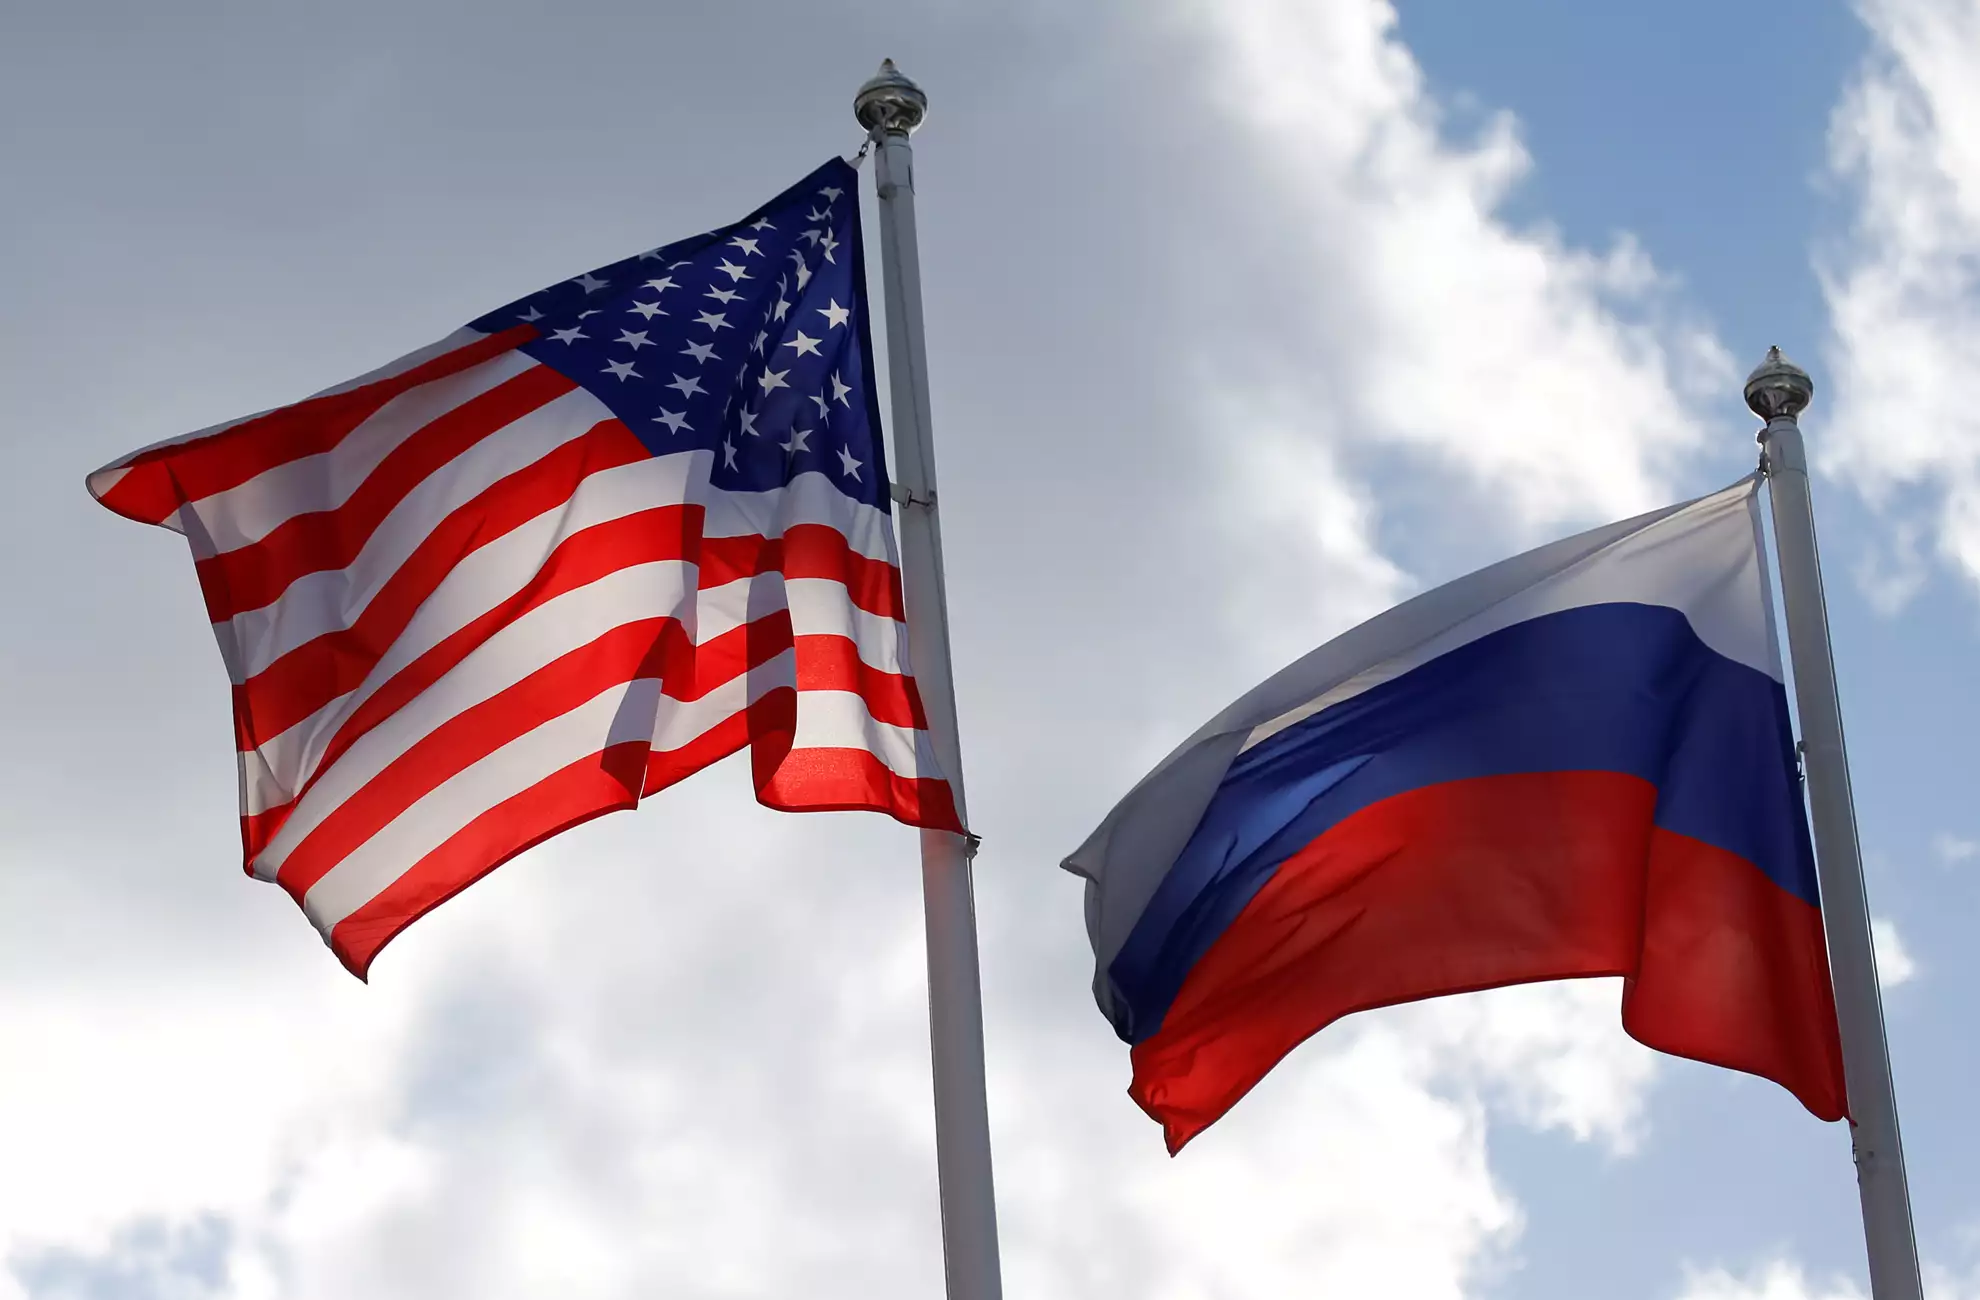 Οι ΗΠΑ ανακοινώνουν σήμερα νέες κυρώσεις σε βάρος της Ρωσίας – Βάζουν «στο μάτι» πάνω από 500 οντότητες